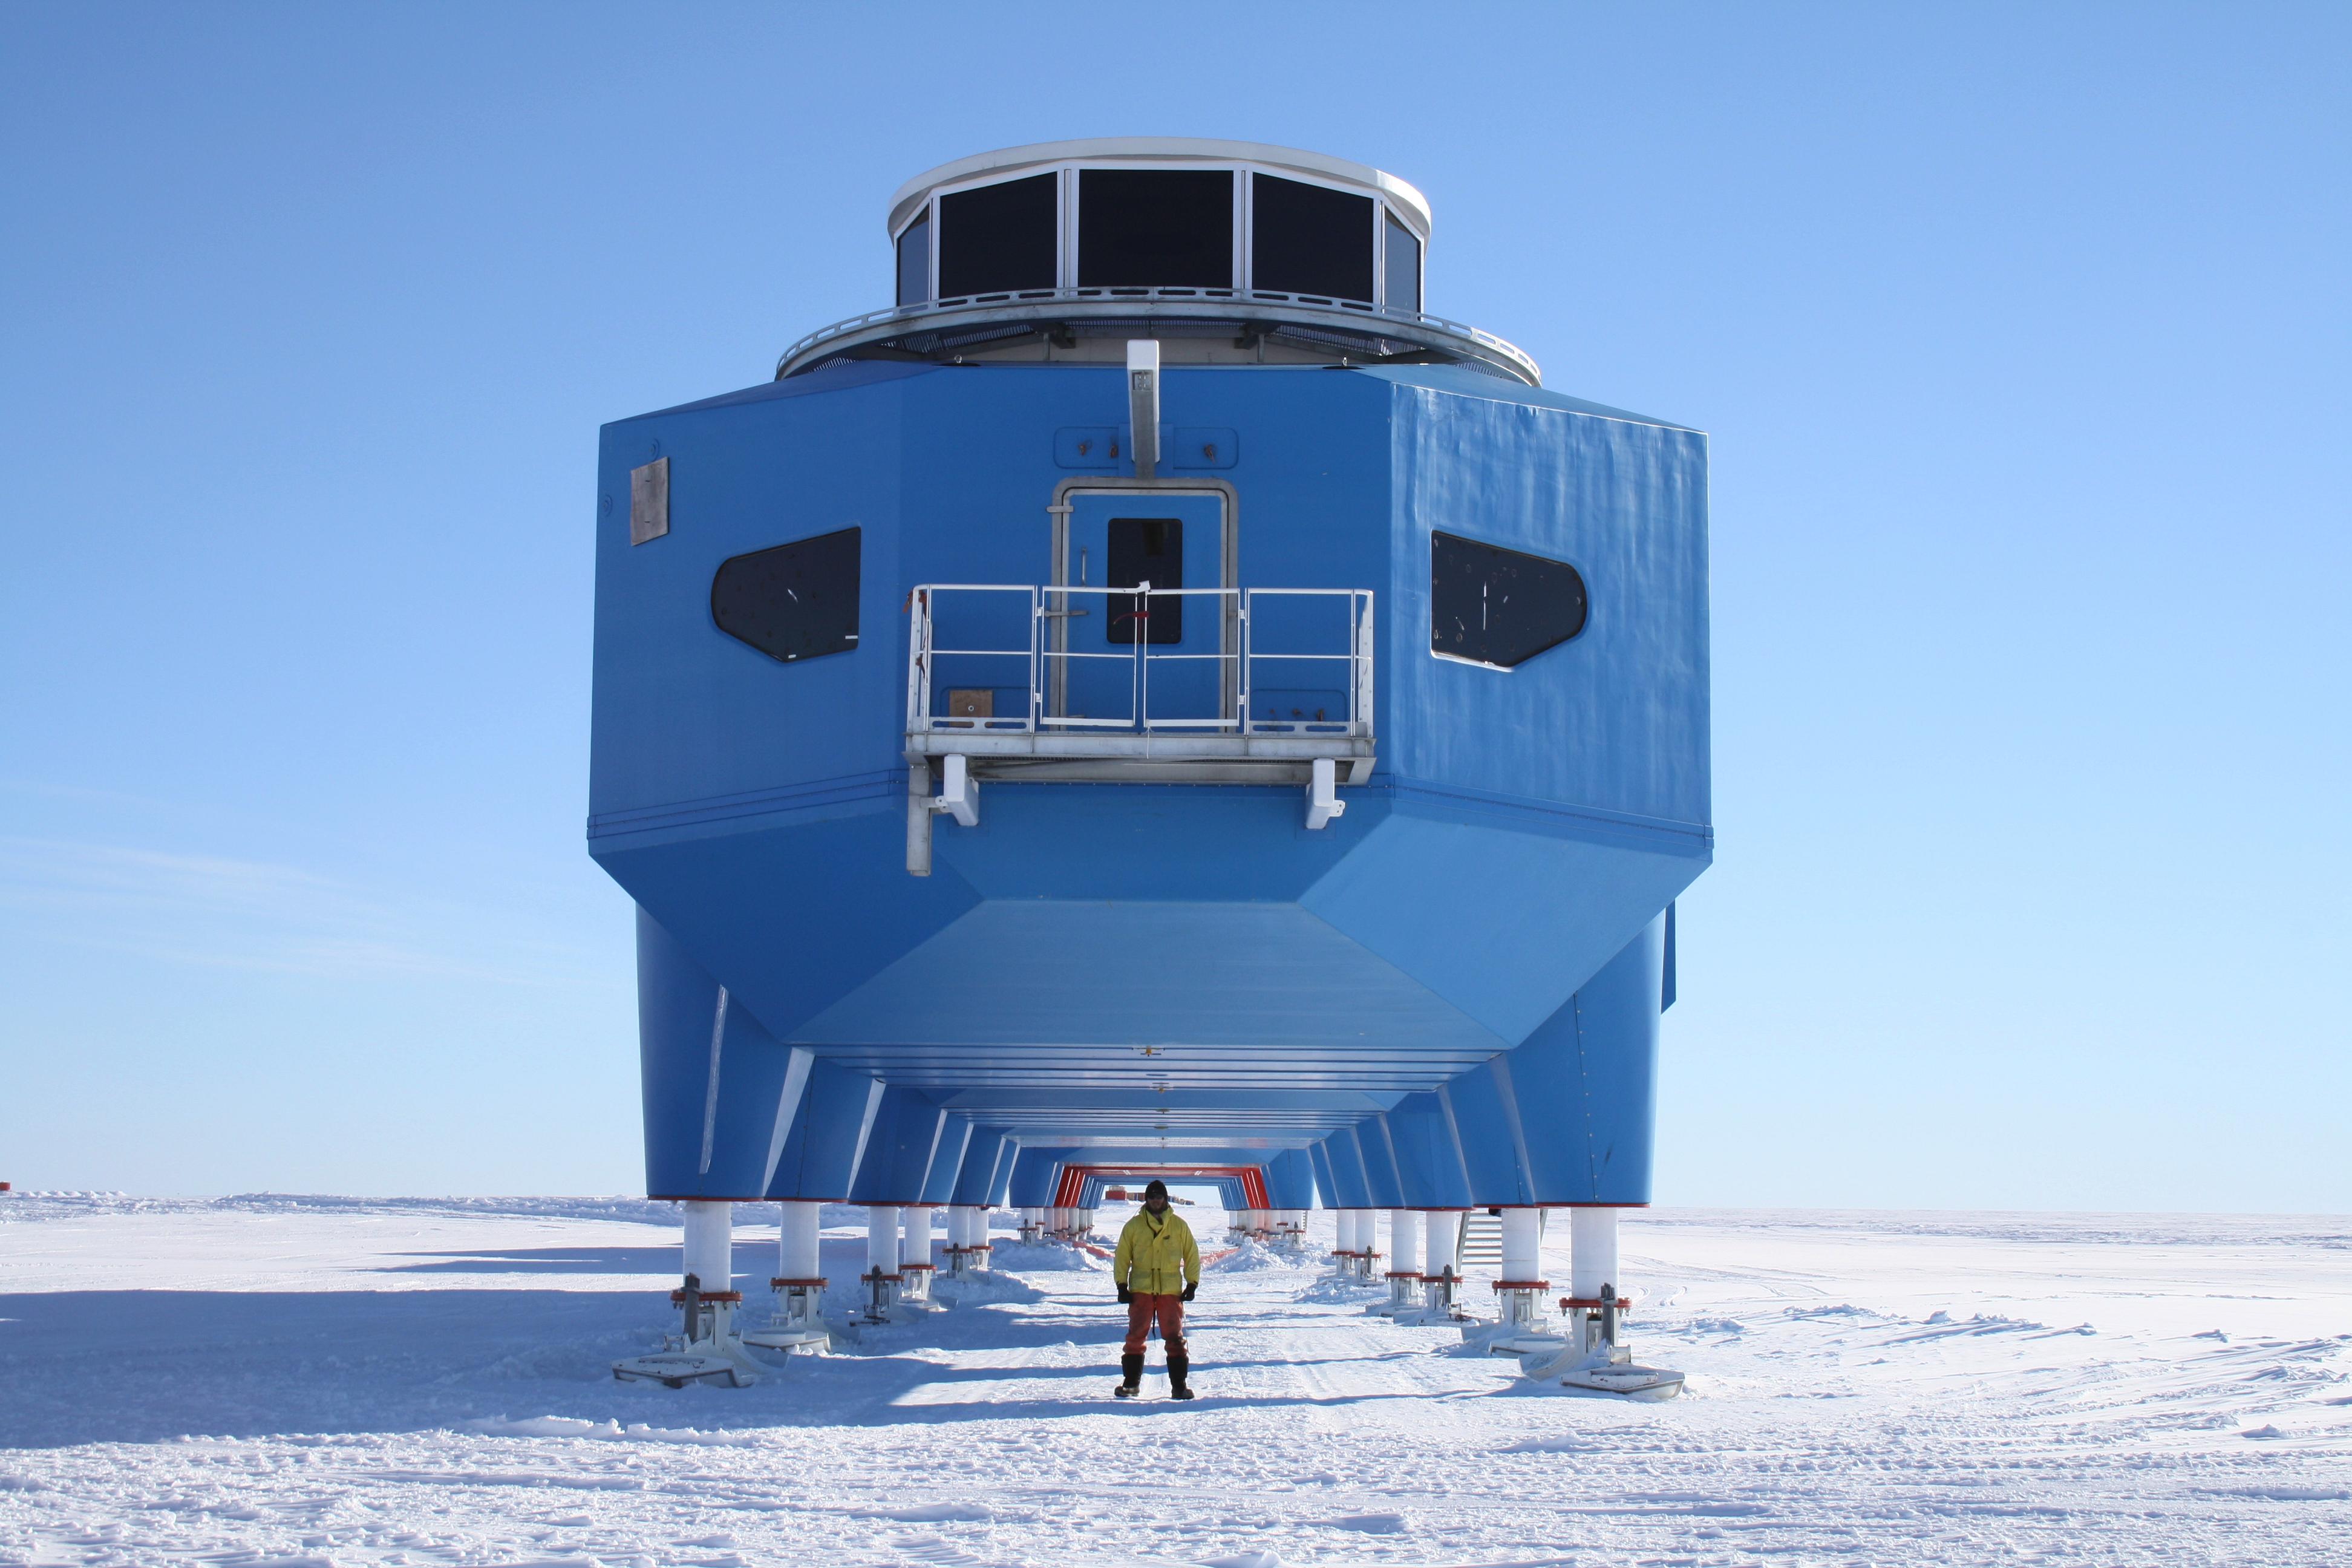 Антарктический научно исследовательский. Арктическая станция Halley. Британская антарктическая станция Halley vi. Станция Халли в Антарктиде. Станция Helley 5 в Антарктиде.